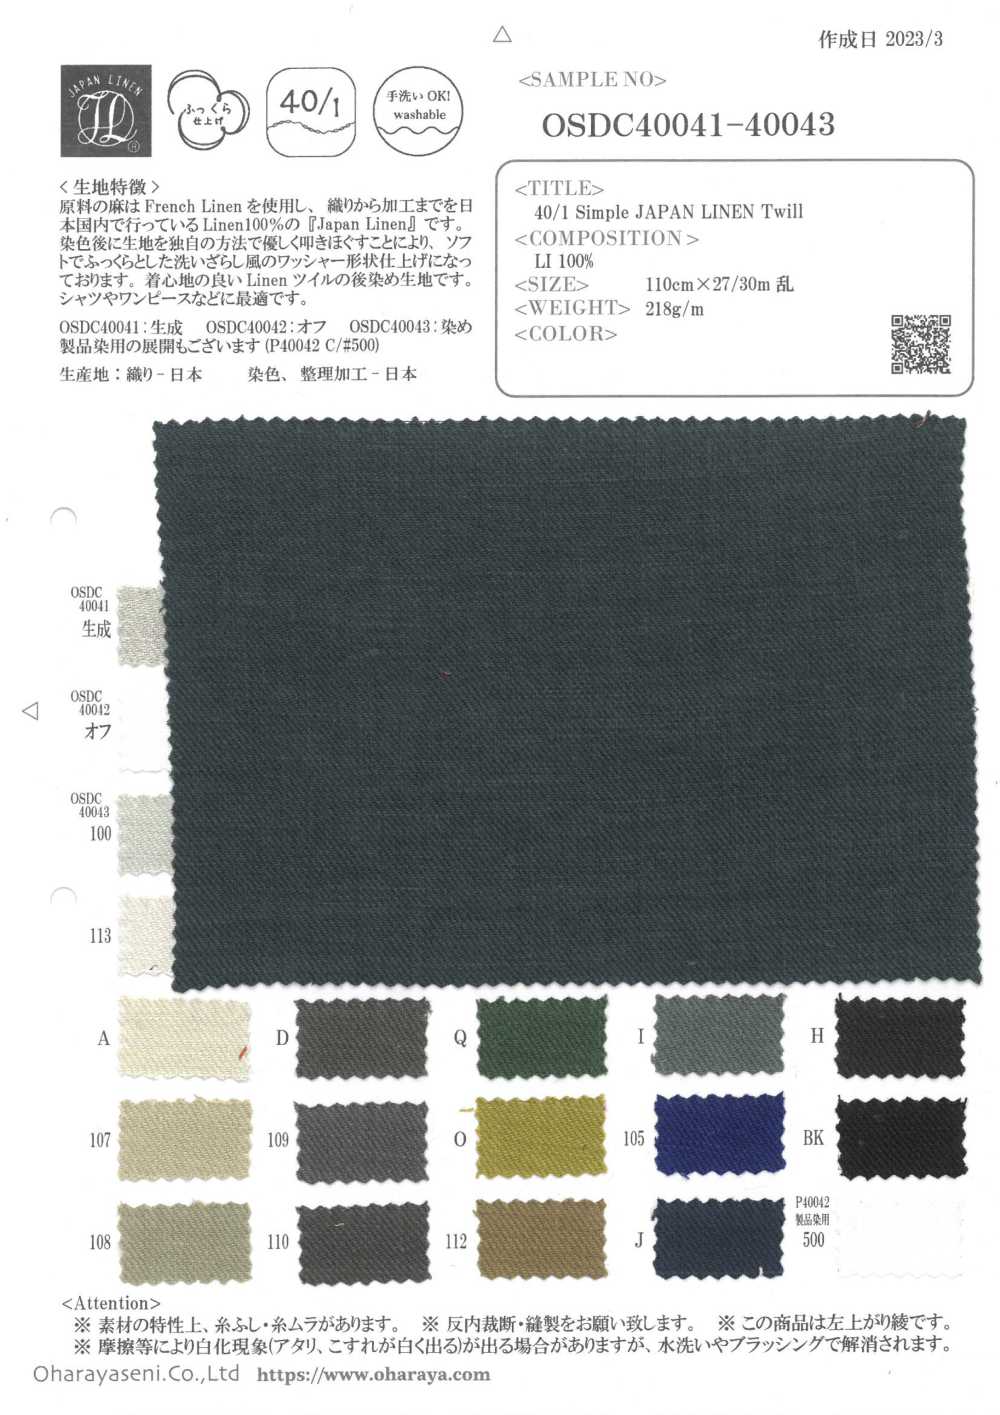 OSDC40041 40/1 Vải Chéo Nhật Bản đơn Giản (Màu Mộc) Oharayaseni